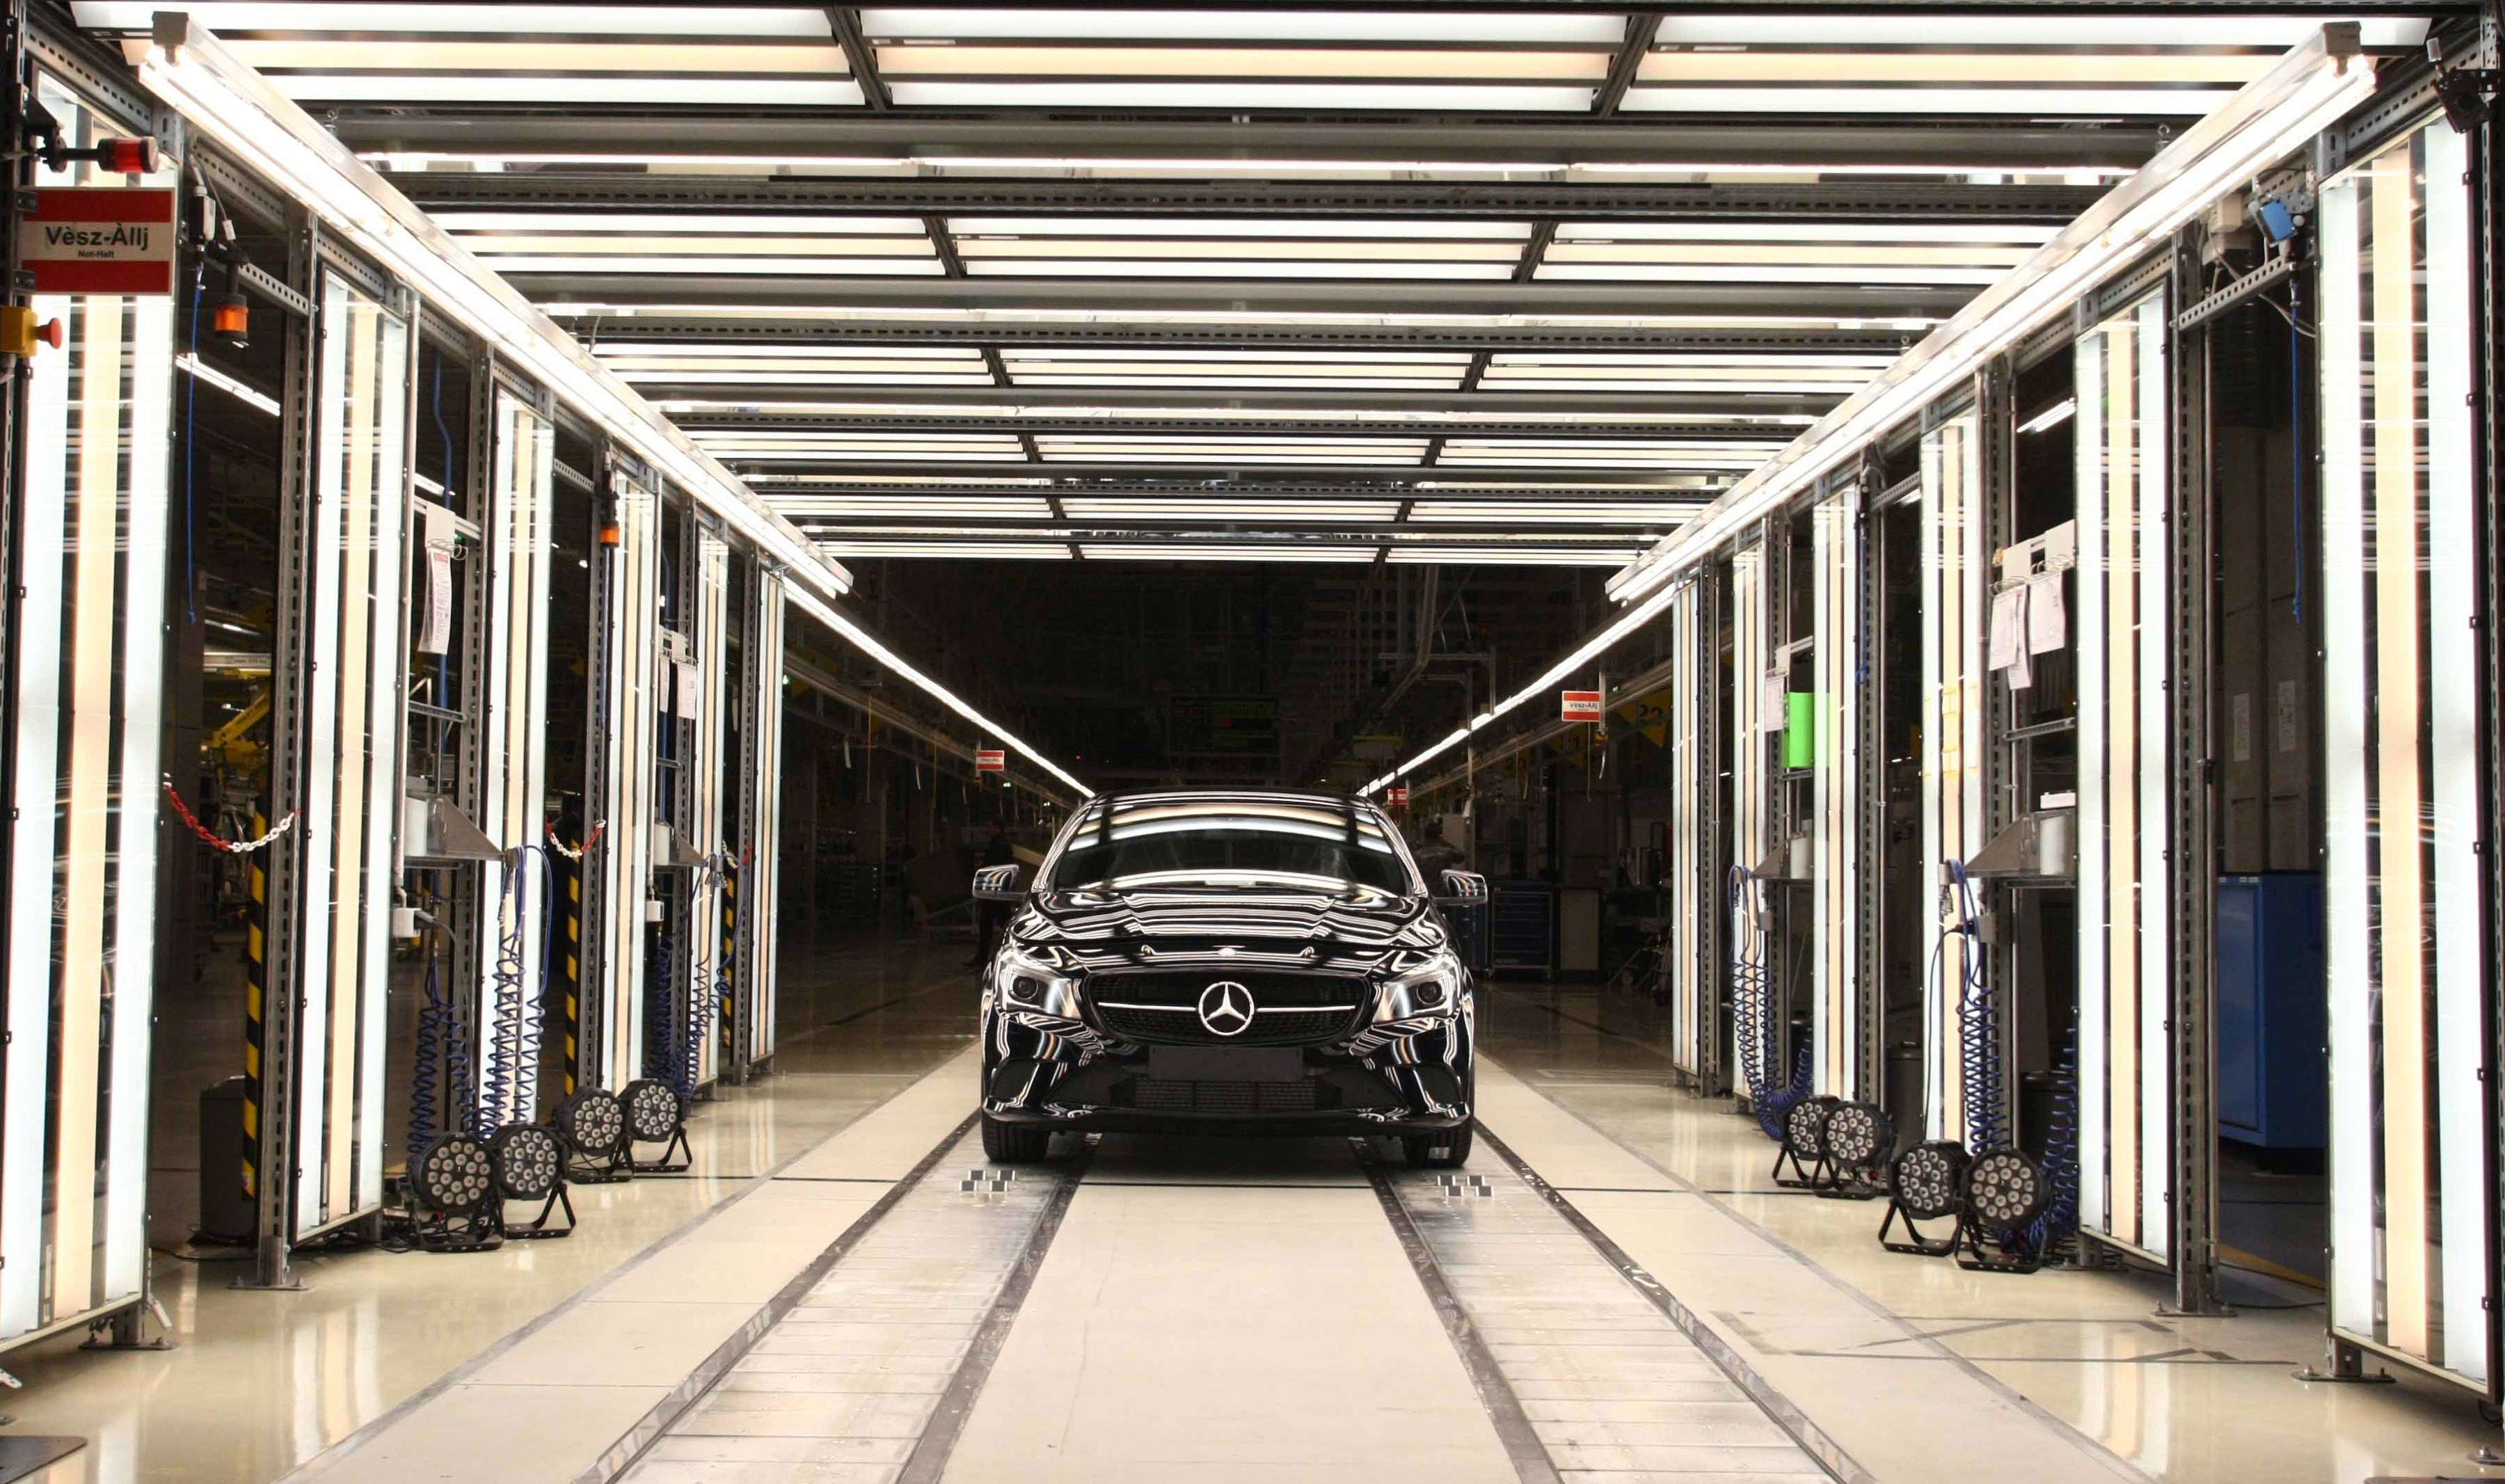 Daimler investeste 300 de milioane de euro in Romania. O noua generatie de cutii de viteza la Cugir